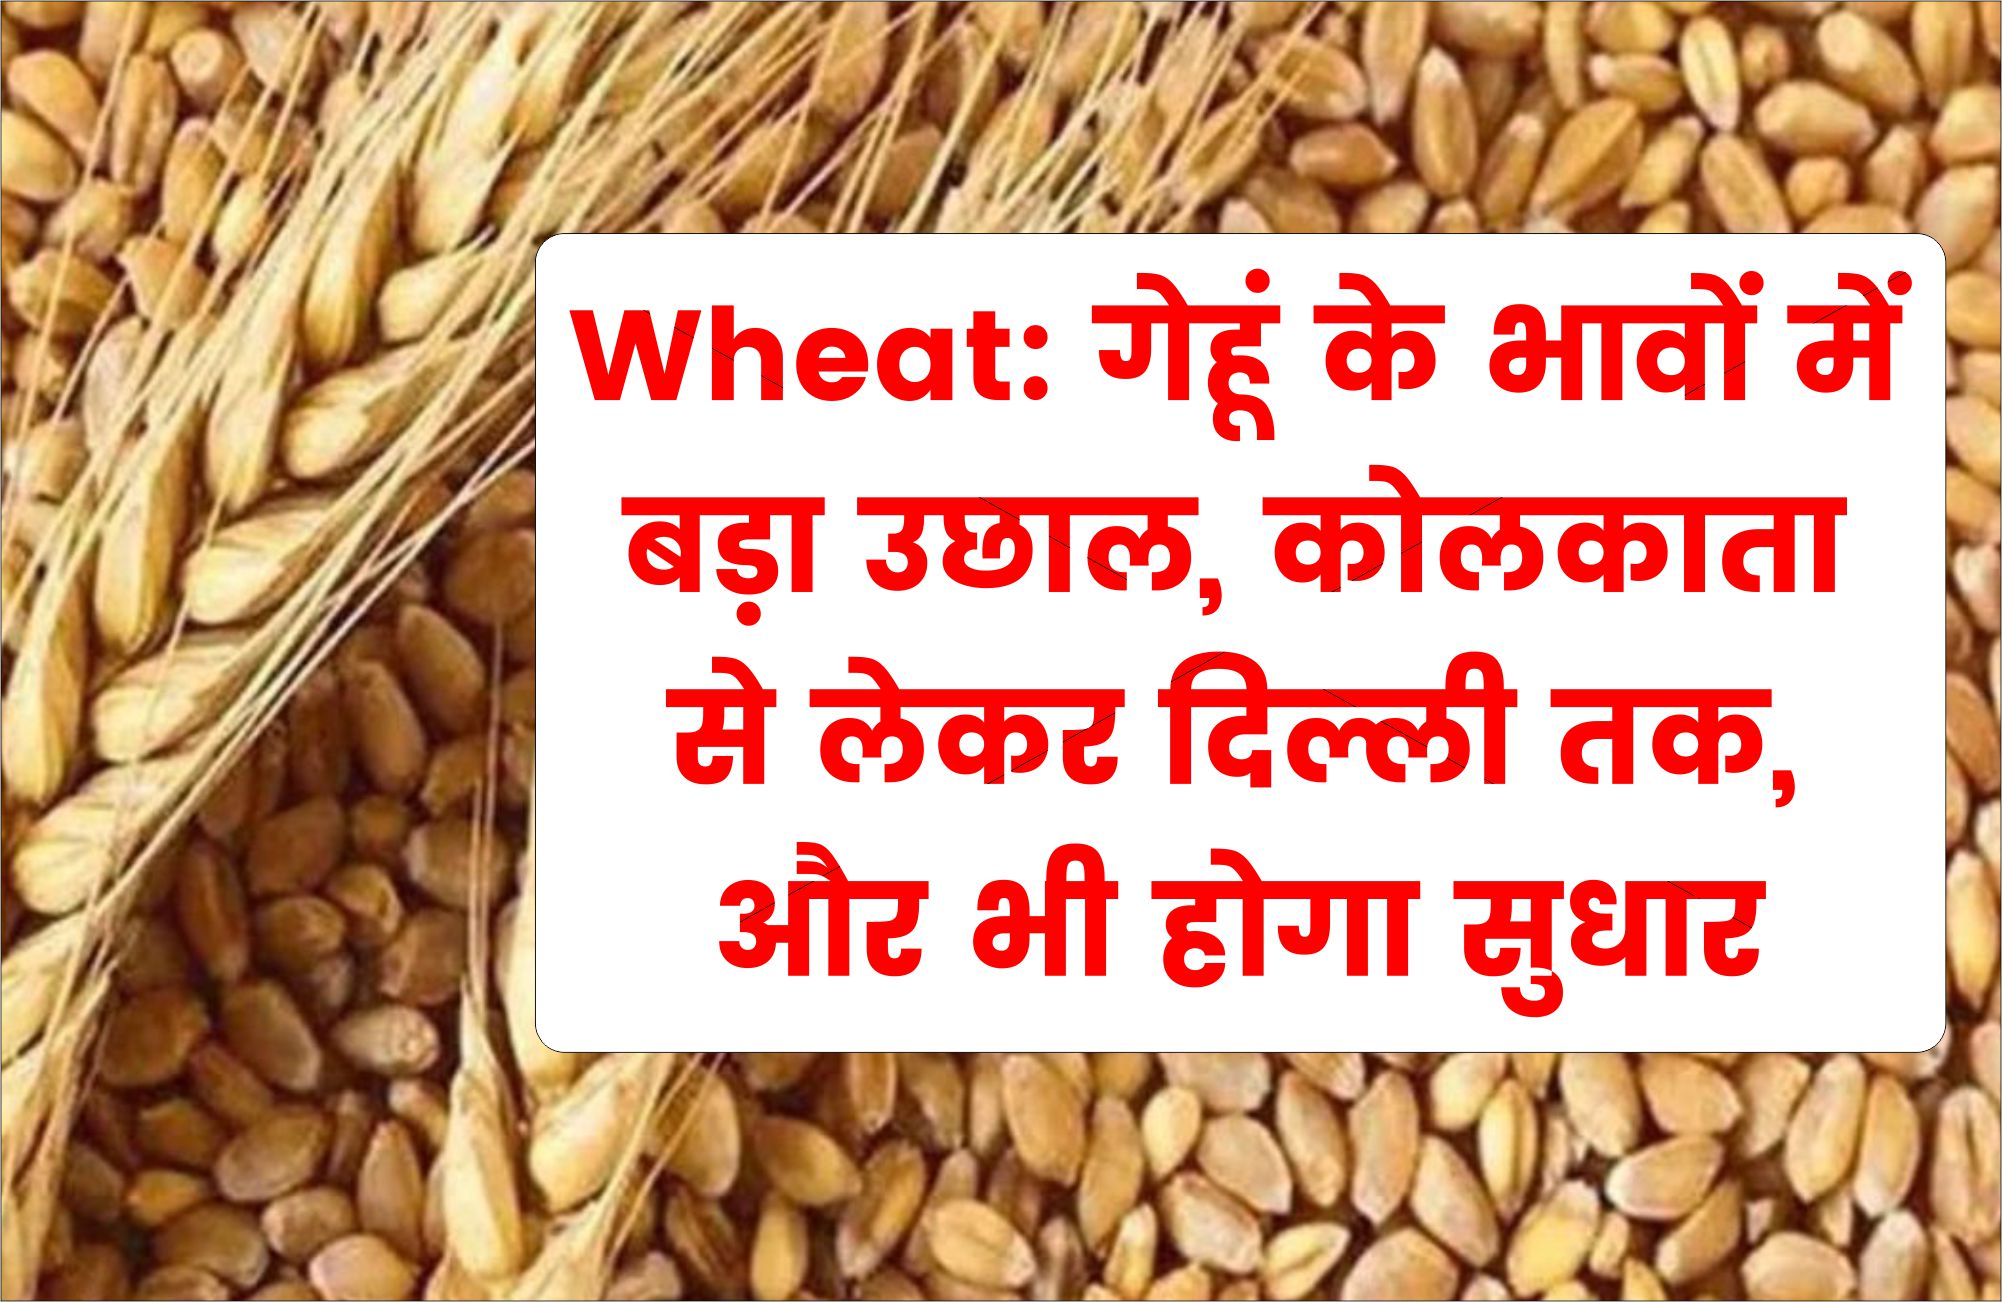 Wheat: गेहूं के भावों में बड़ा उछाल, कोलकाता से लेकर दिल्ली तक, और भी होगा सुधार